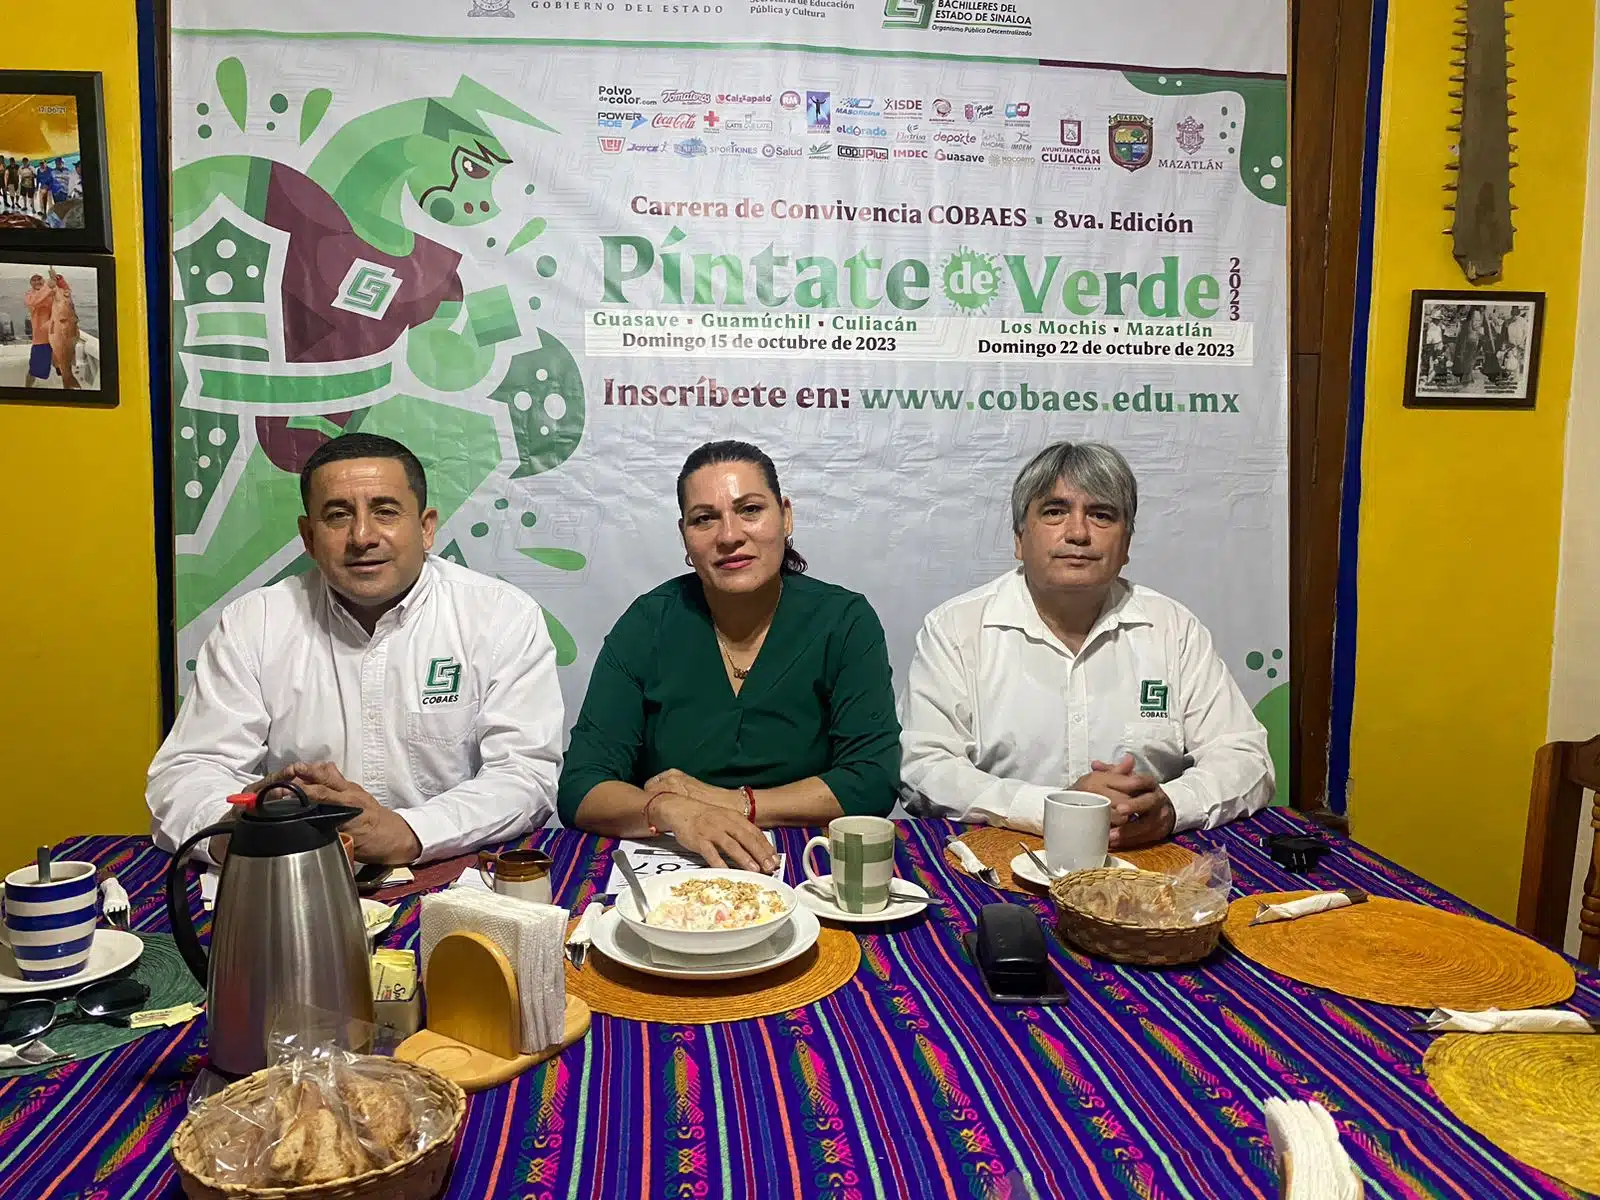 3 personas en una conferencia de prensa sobre la carrera píntate de verde de Cobaes en Guasave